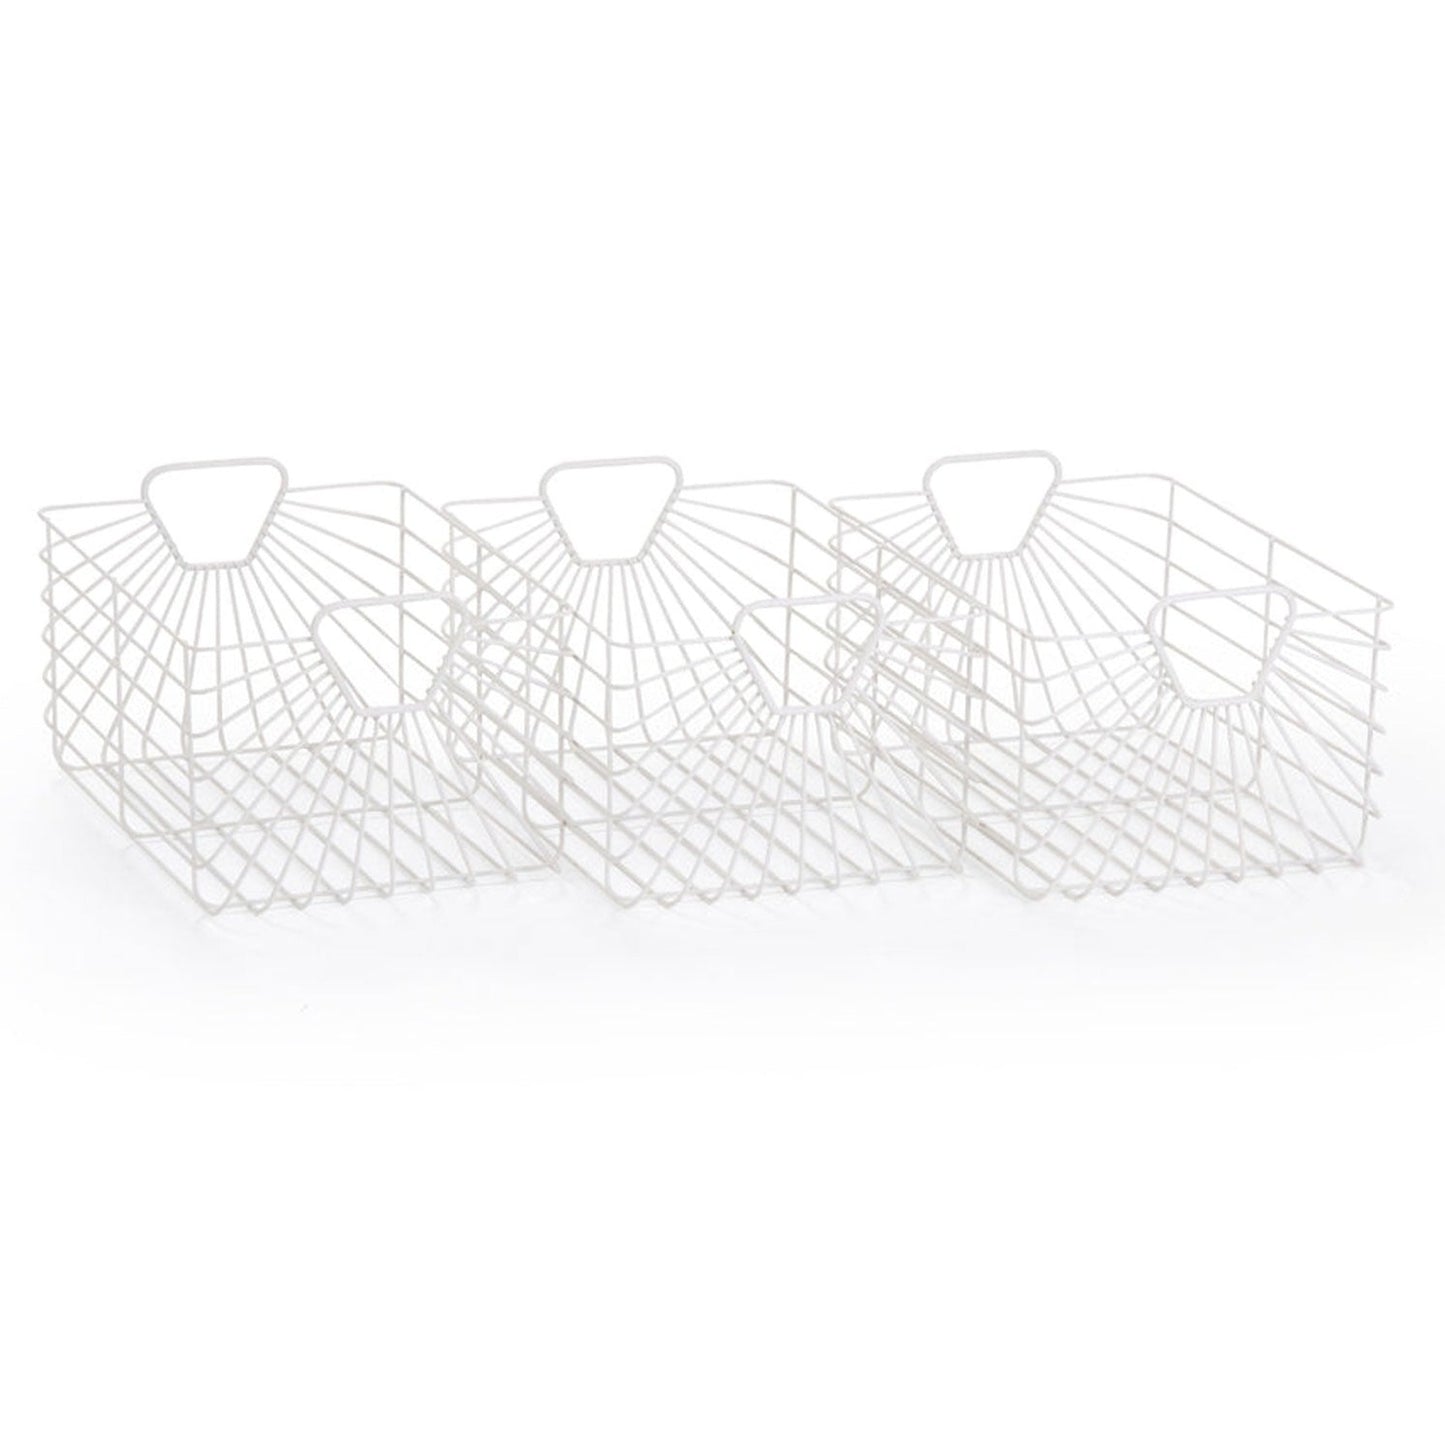 Dadada Central Park Storage Baskets - Set of 3 - White